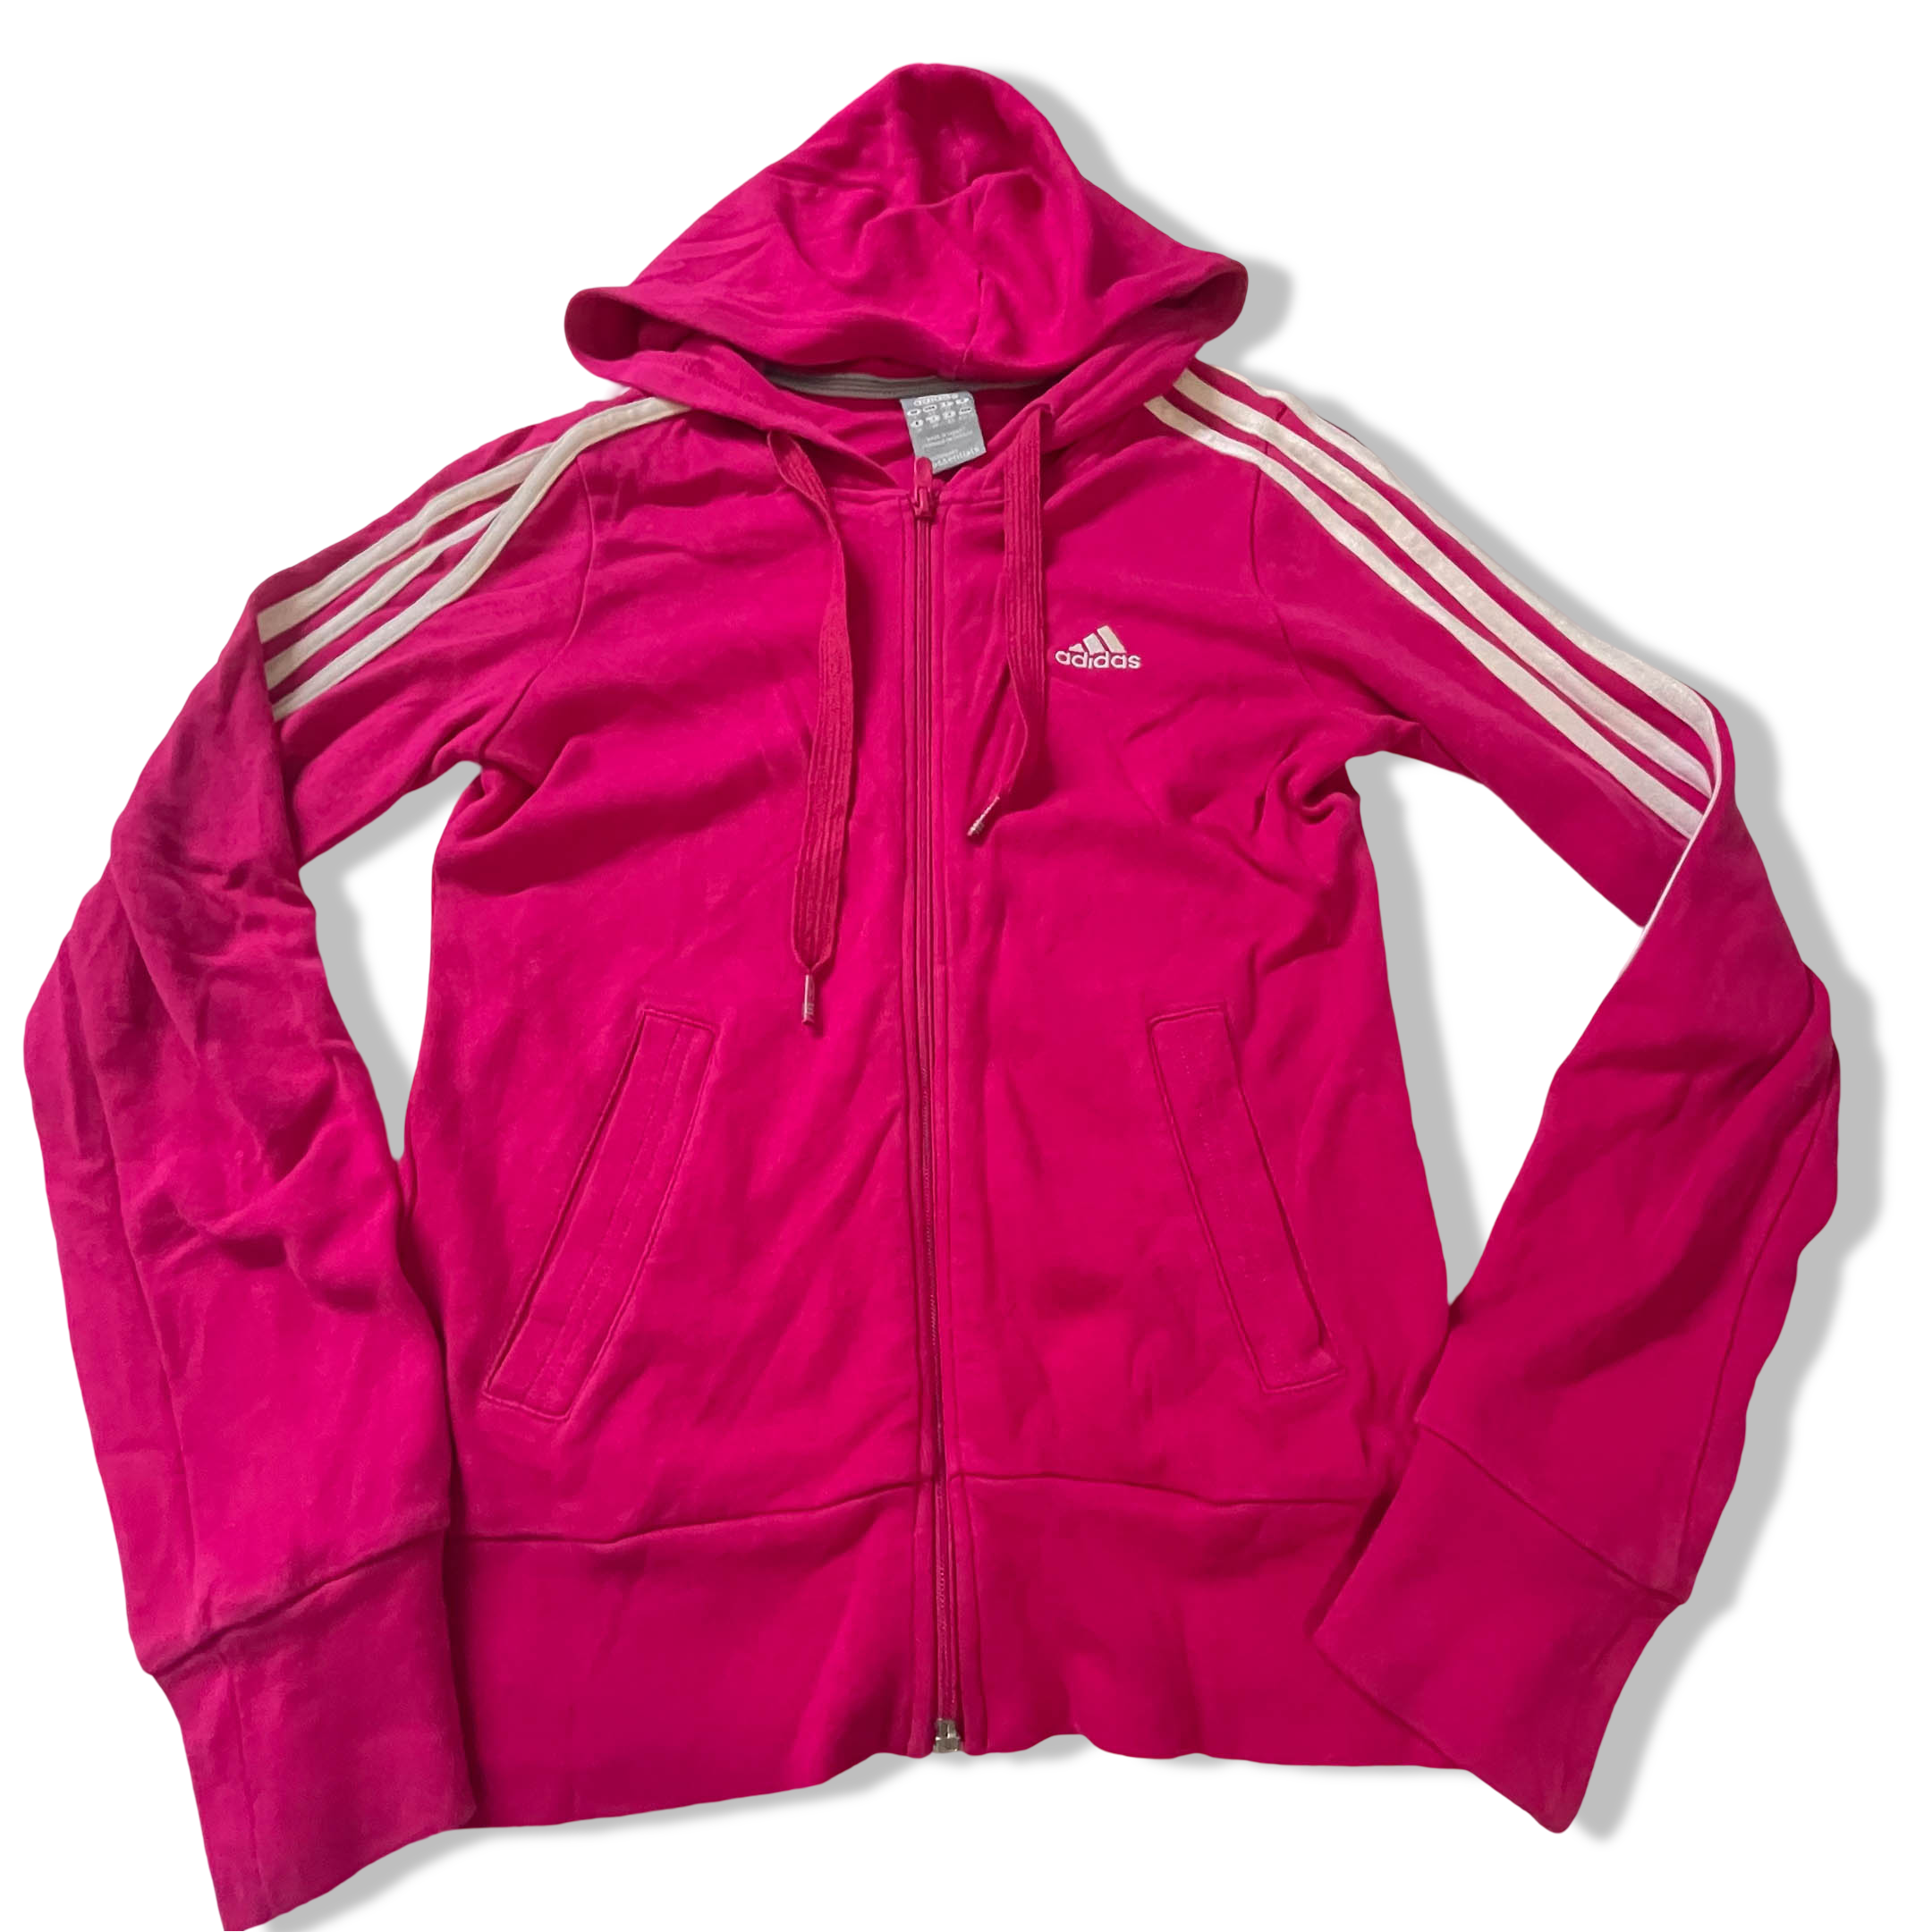 Vintage Adidas Essential 3 stripe red full zip hoodie jacket in M|L22W15|SKU3835